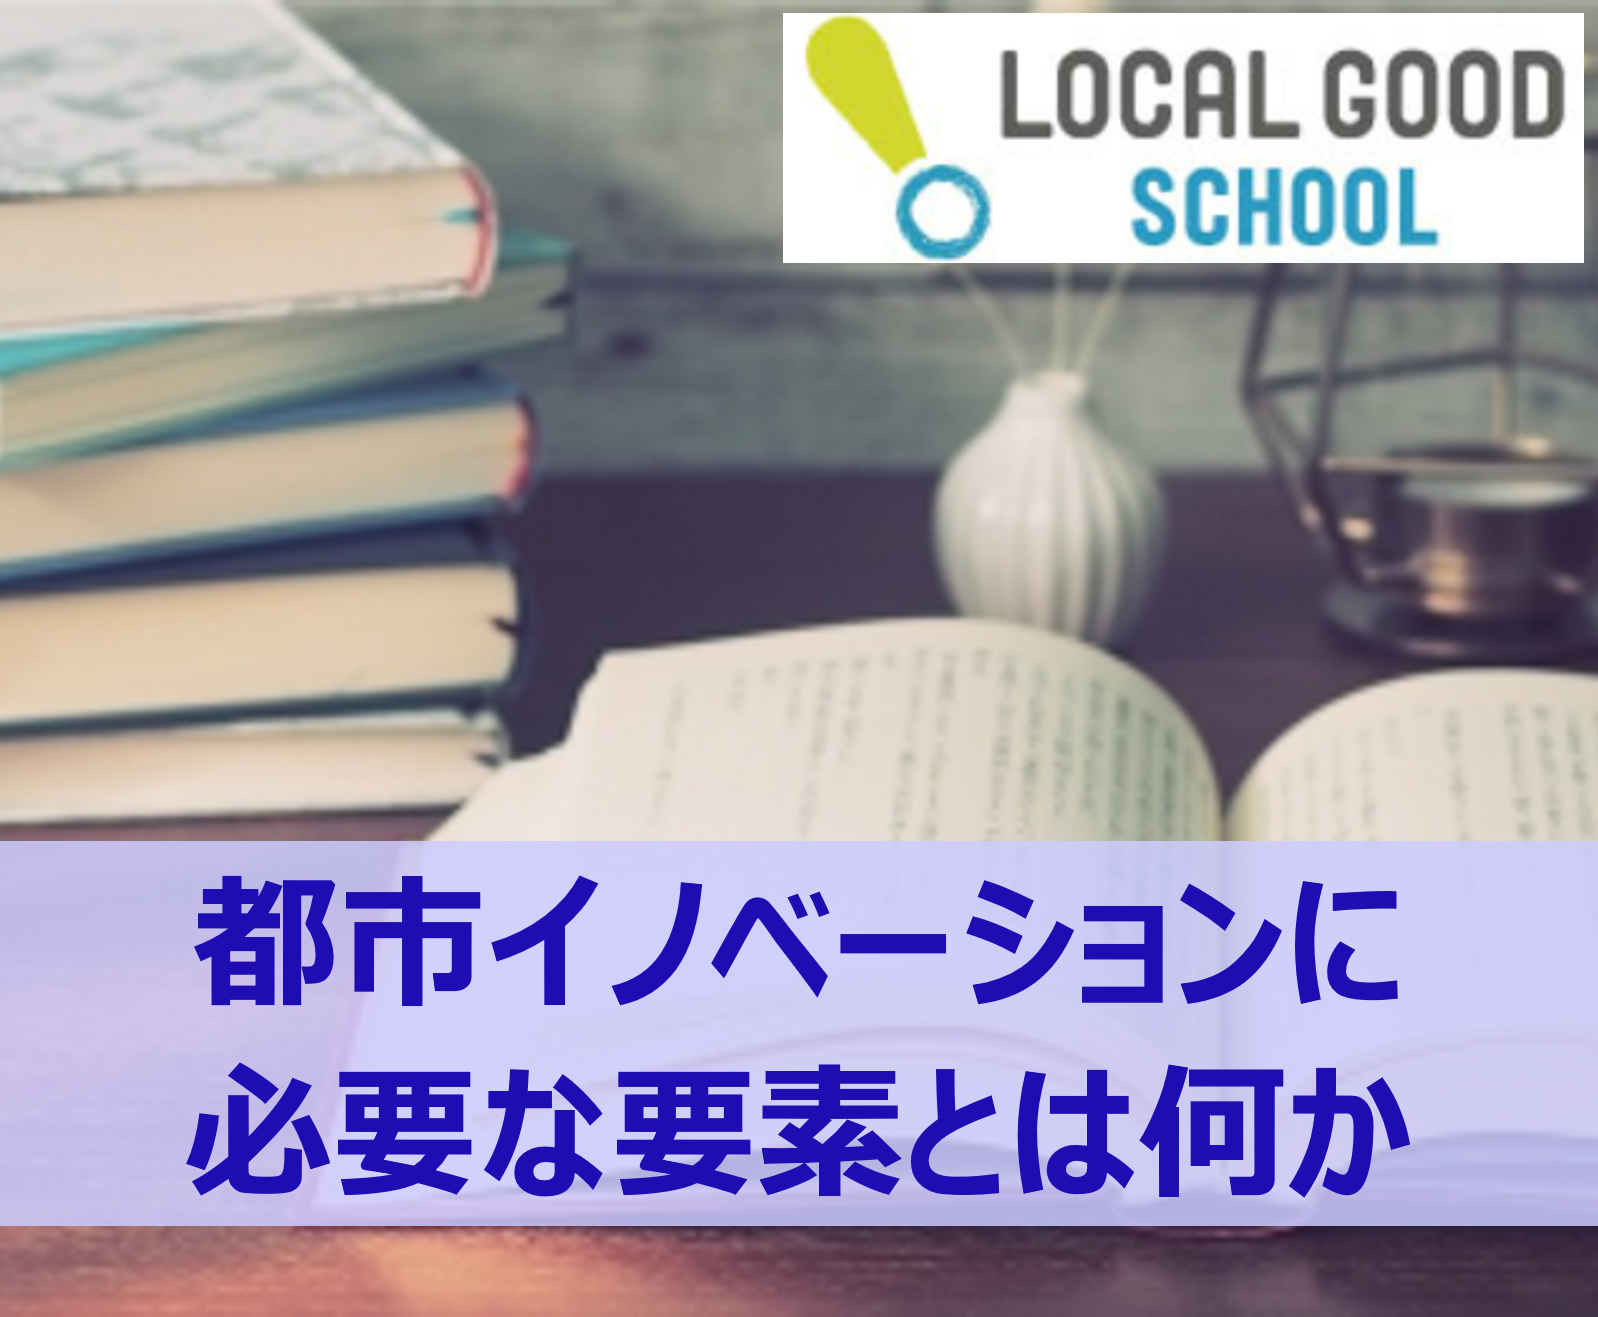 横浜の活性化に繋がる都市のイノベーションについて考える - LOCAL GOOD SCHOOL